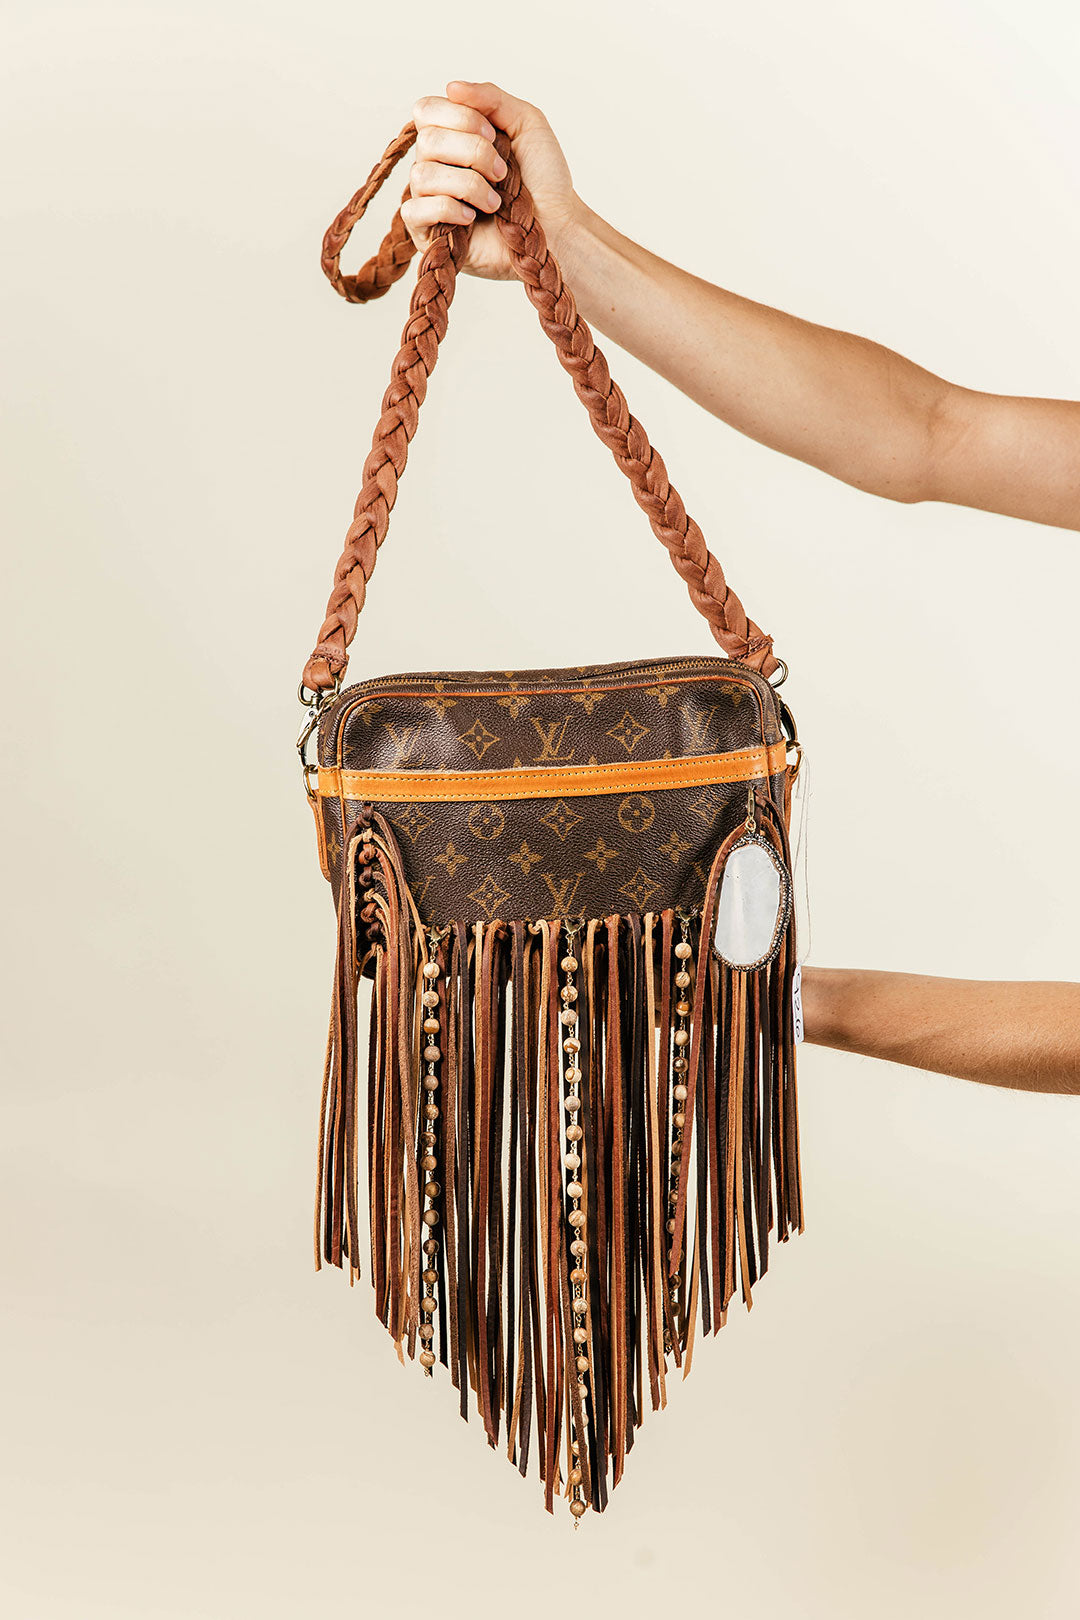 Spring Flash Sale Bag #1060 – Vintage Boho Bags